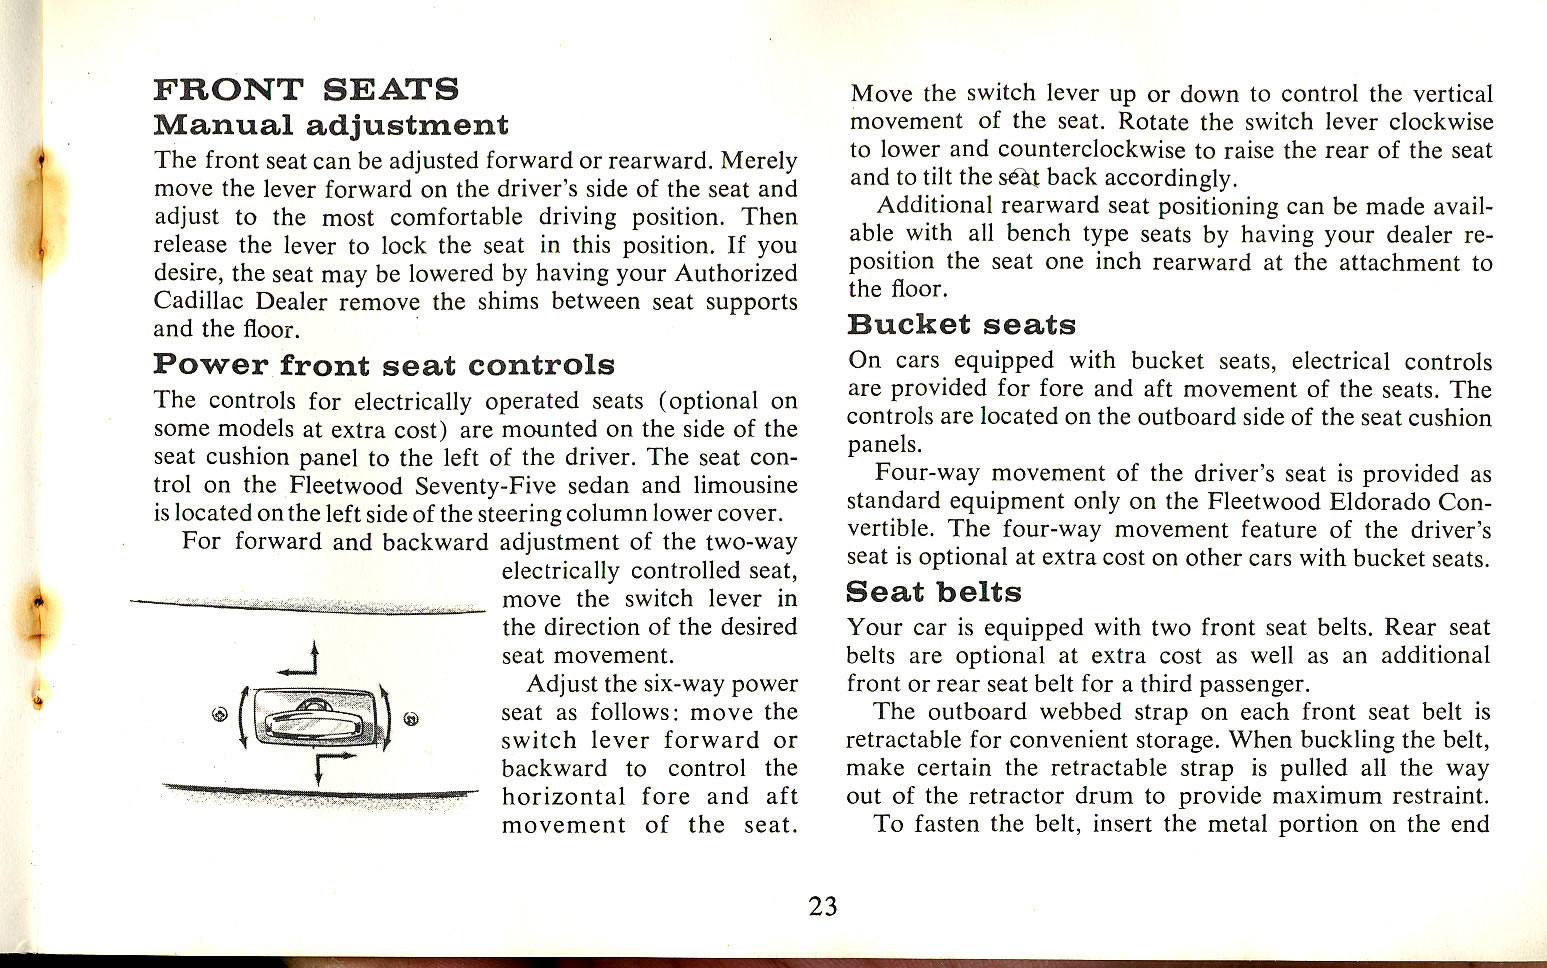 1965 Cadillac Manual-23